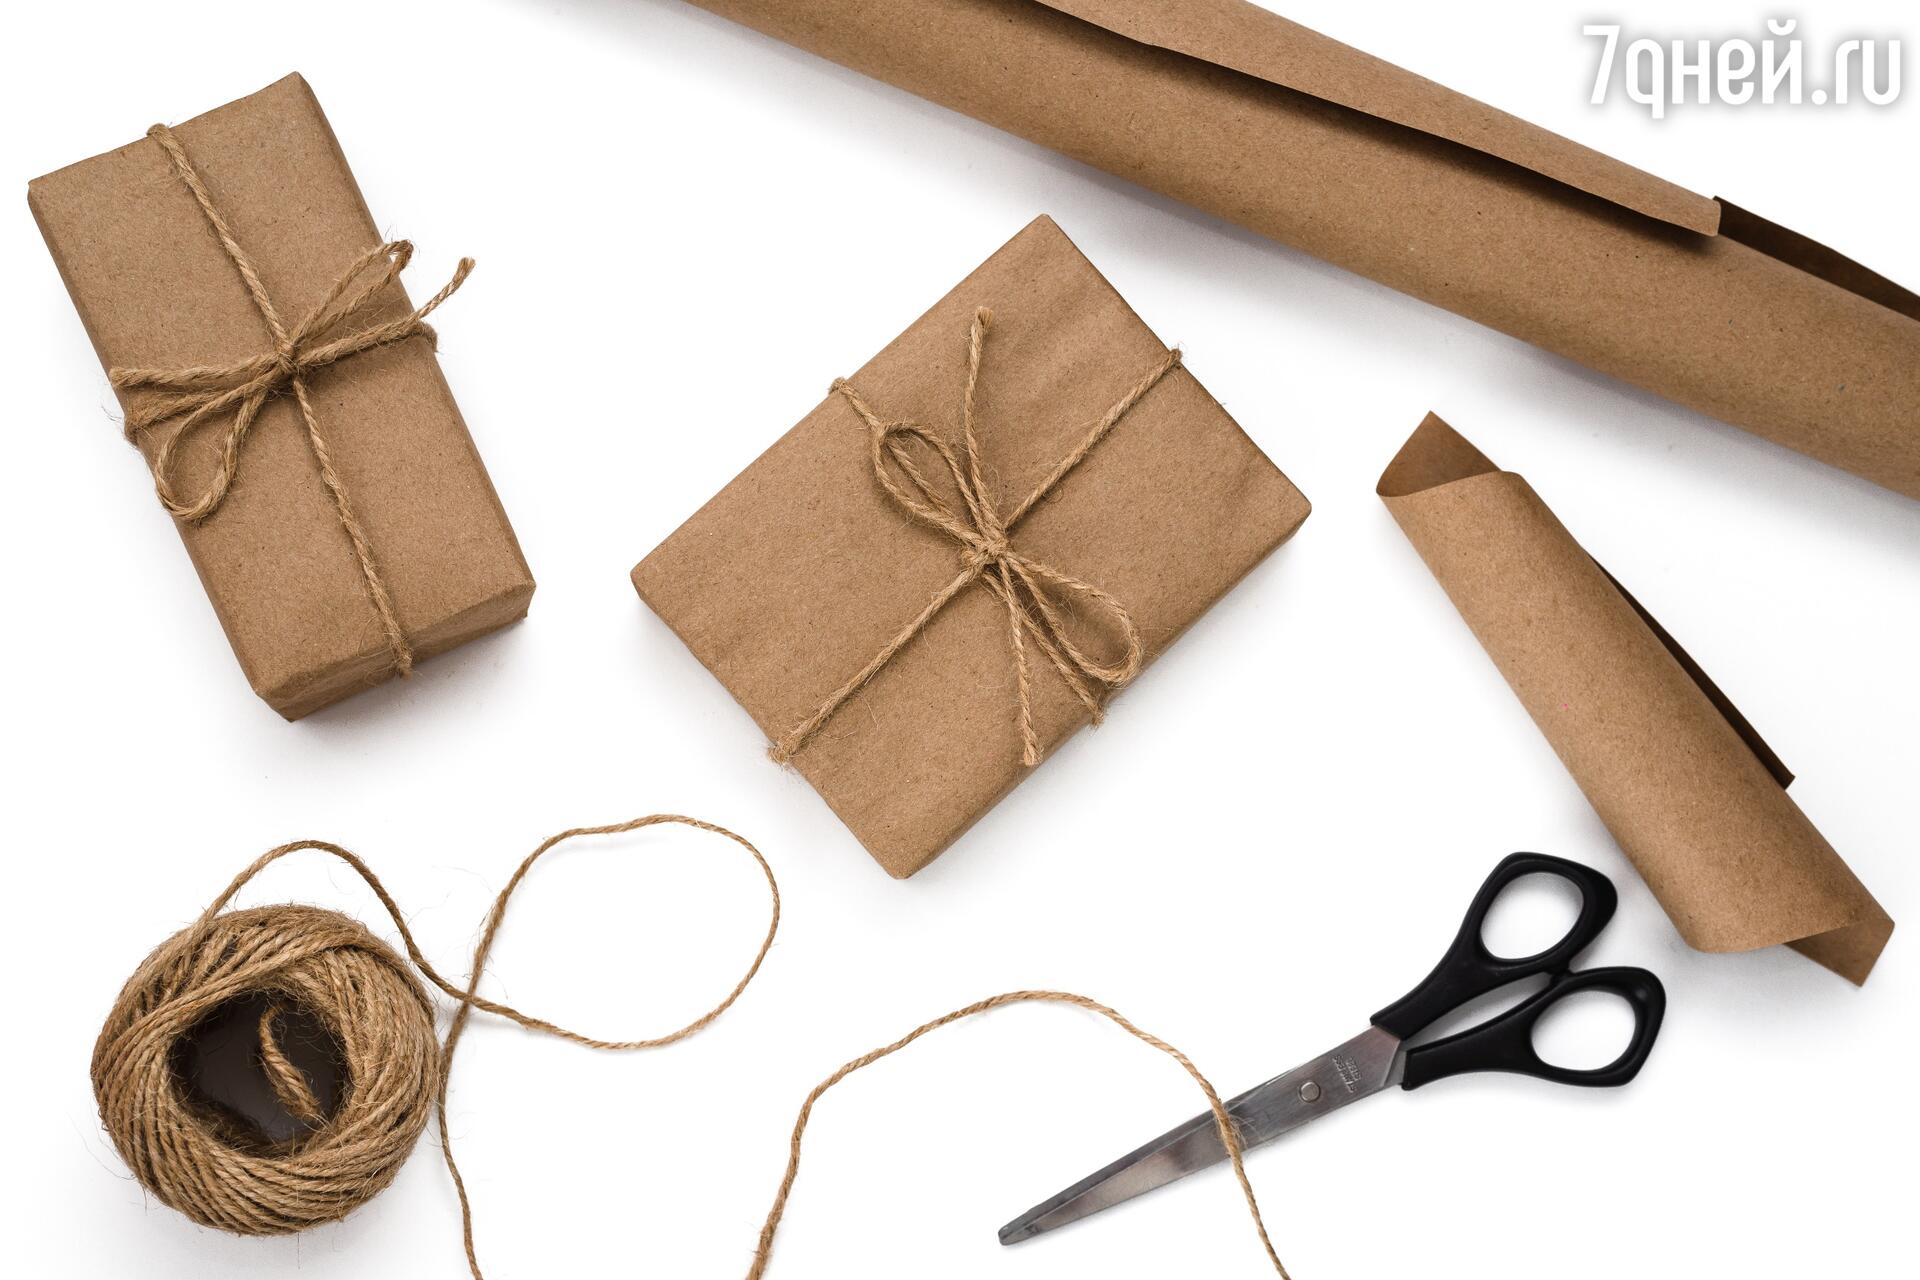 Как эффектно упаковать подарок любой формы и размера